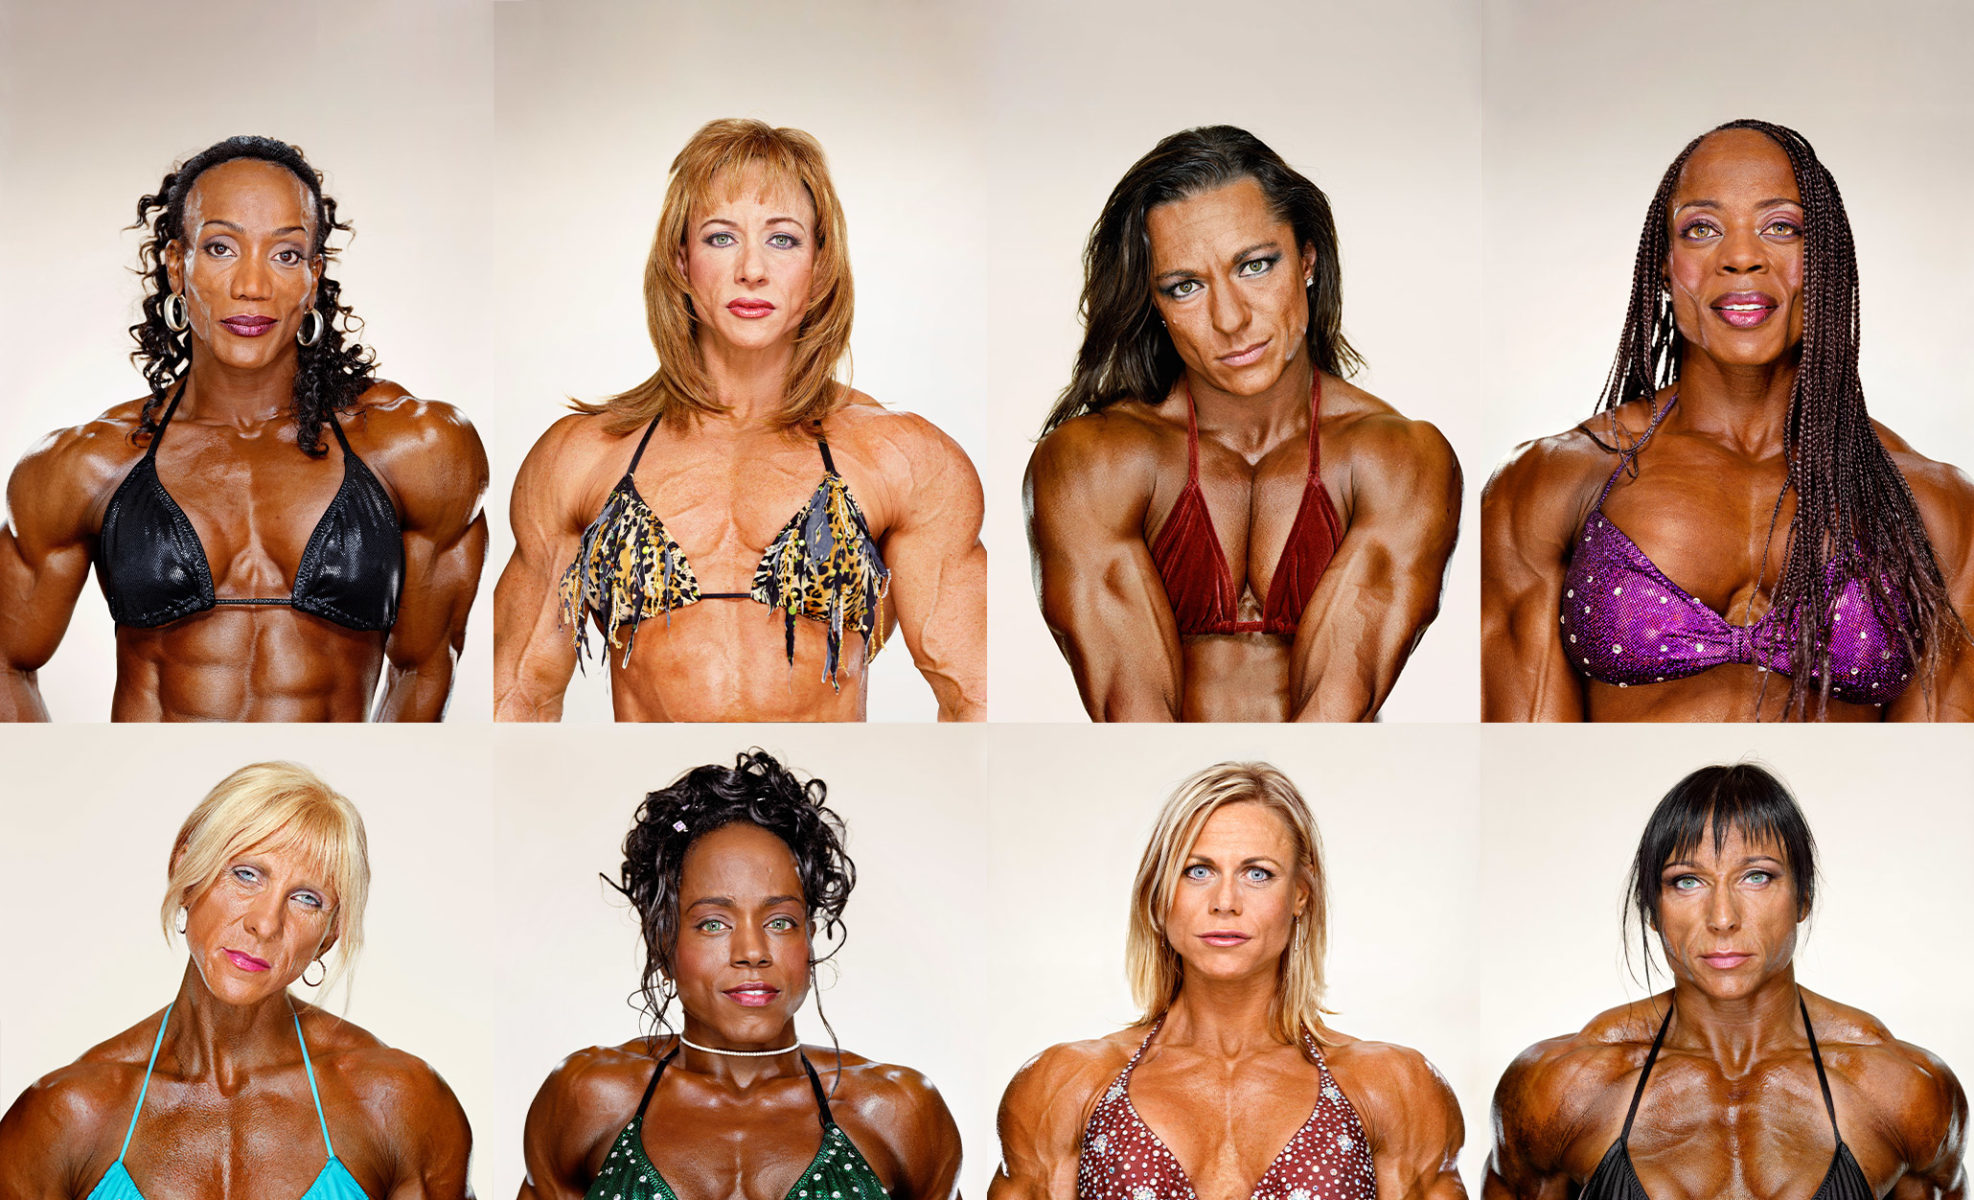 Best of Images of women bodybuilders